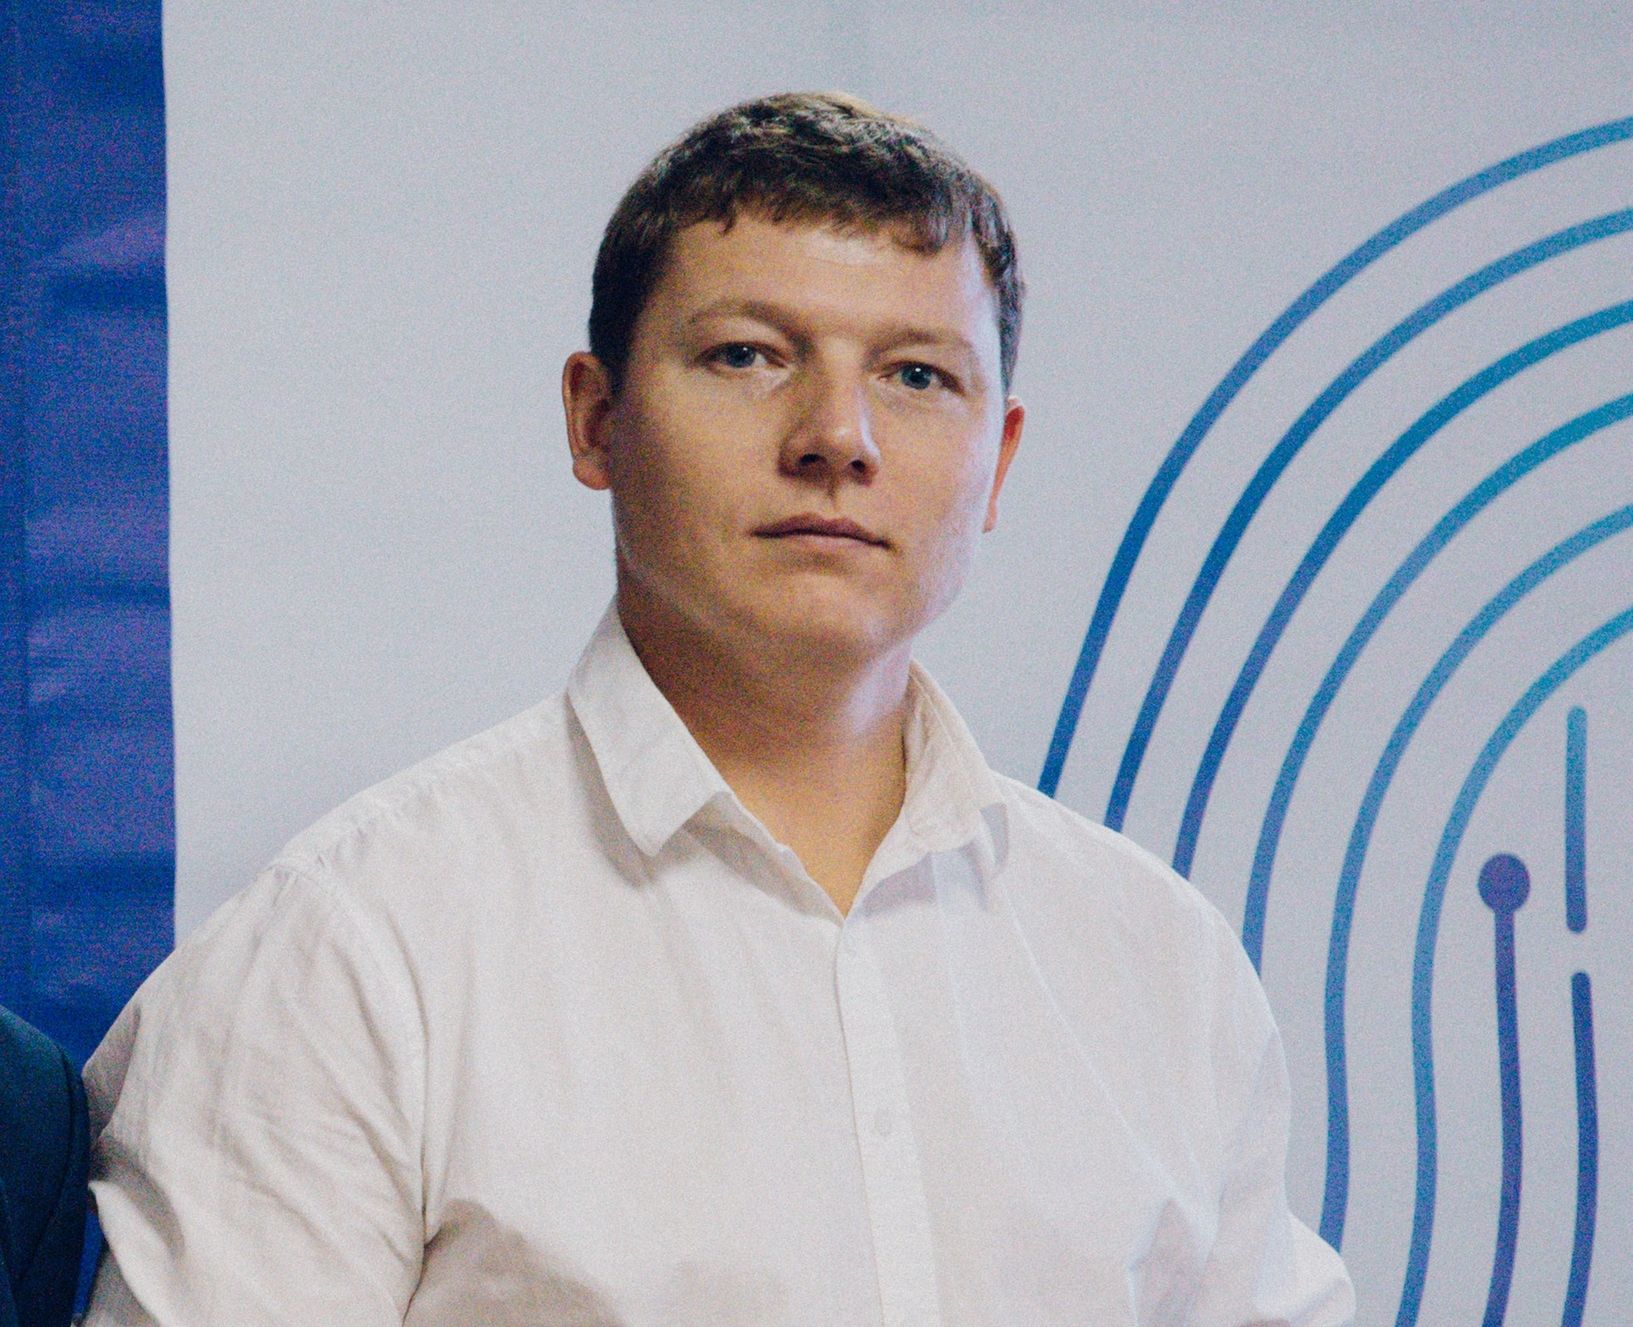 Дмитрий Серов: «Участие в голосовании – осознанное решение нести ответственность за будущее России»